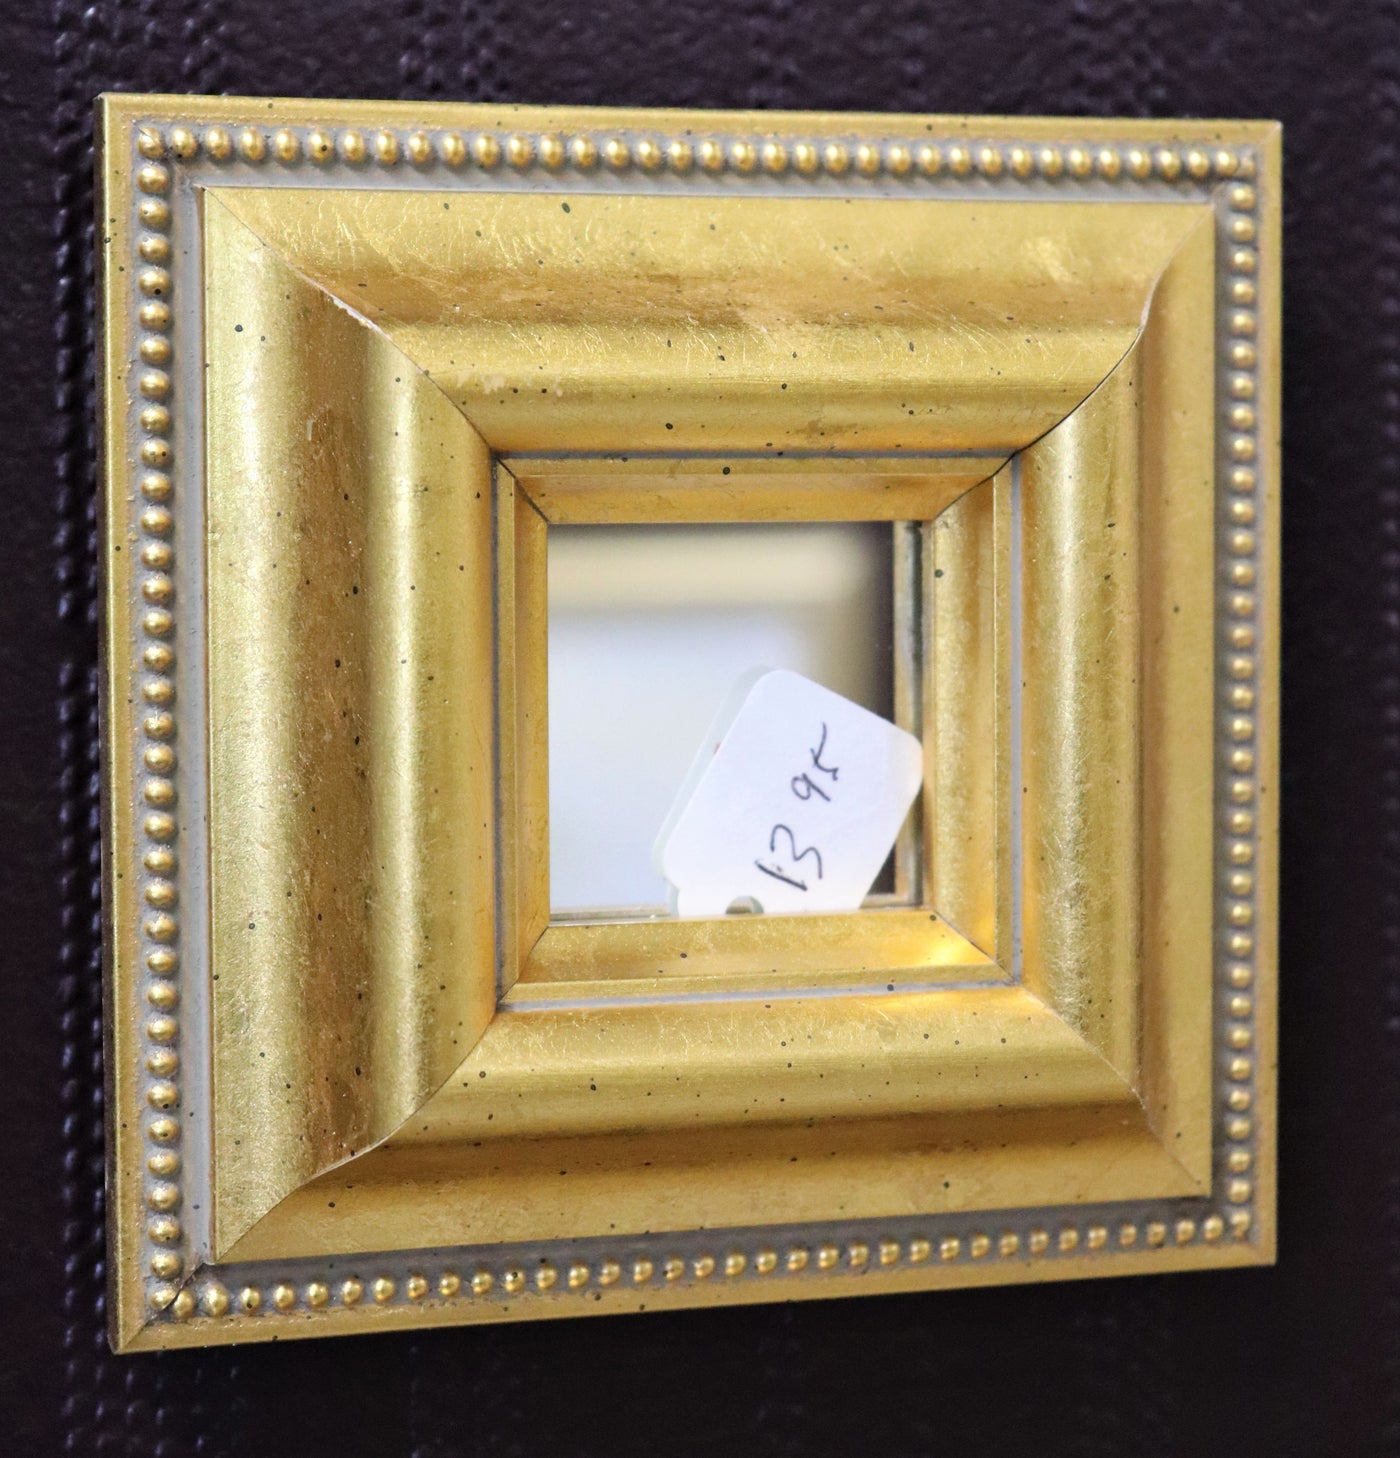 4 3/8" x 4 3/8" Square Gold Micro-Mirror